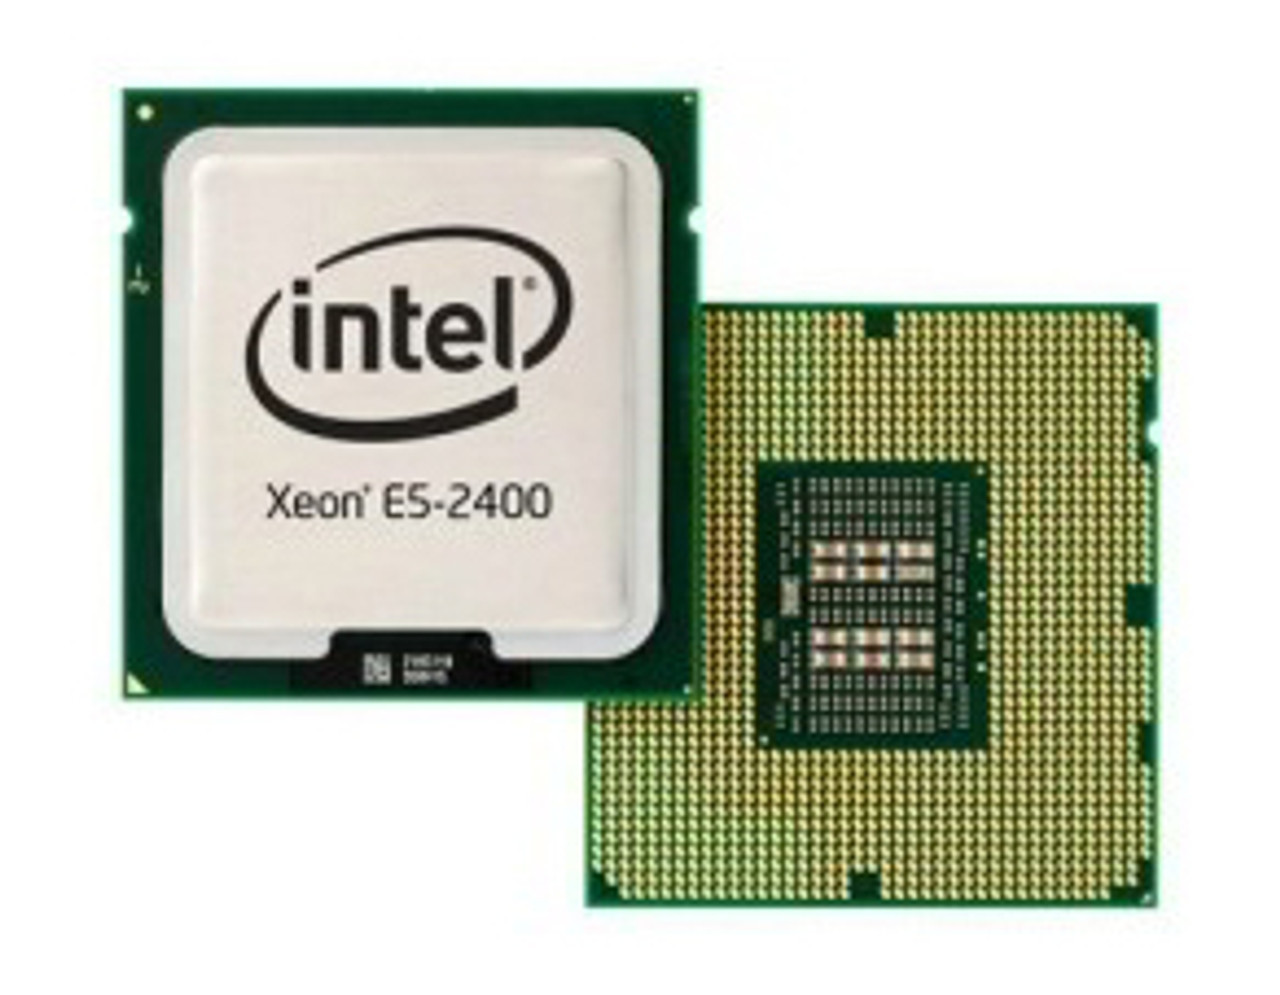 SR1B2 - Intel Xeon 6 Core E5-2430LV2 2.4GHz 15MB L3 Cache 7.2GT/S QPI Speed Socket FCLGA1356 22NM 60W Processor